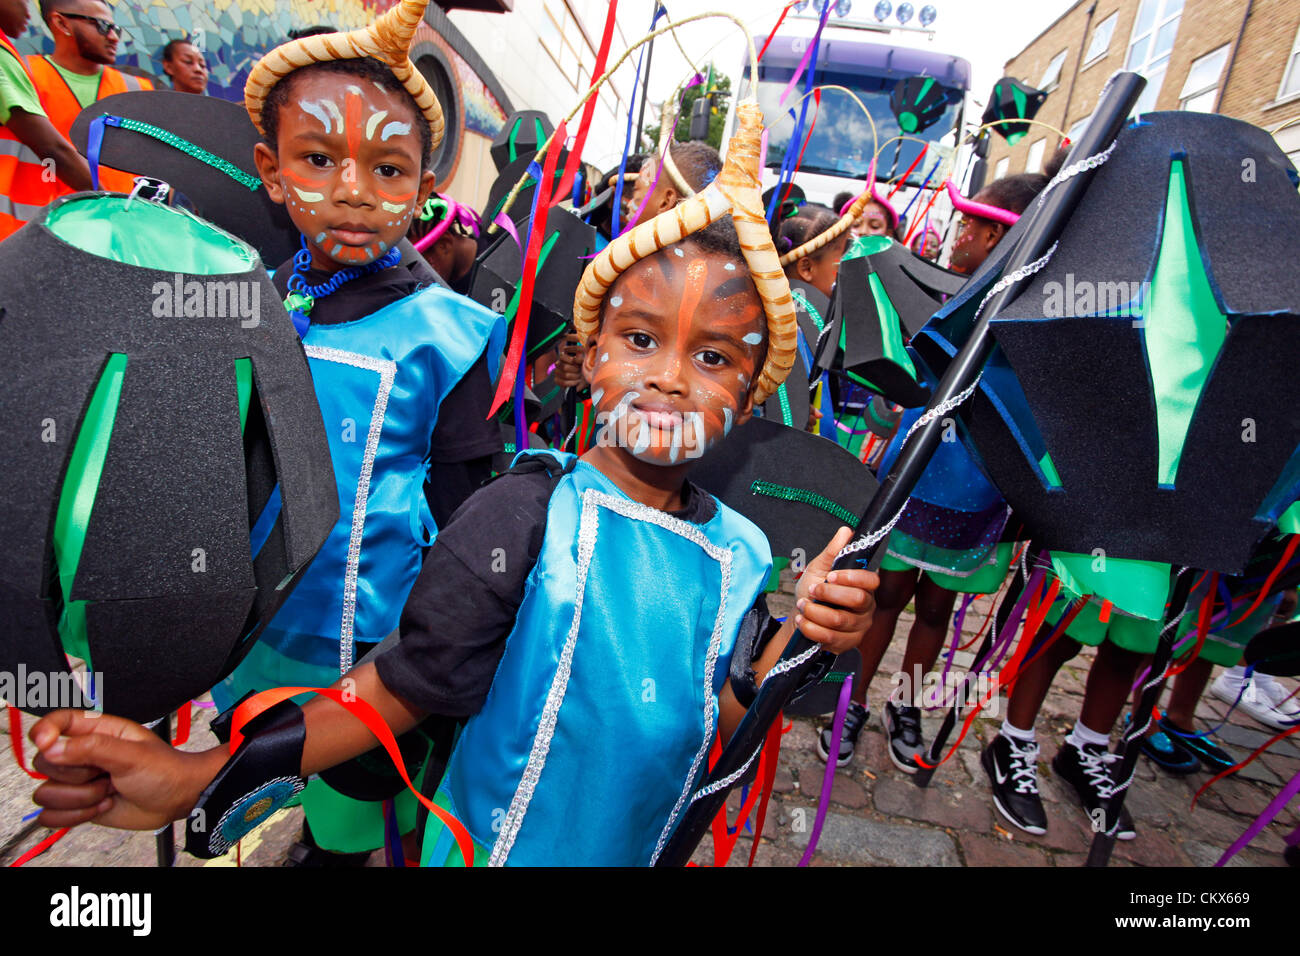 26 août 2012. Les participants au carnaval de Notting Hill sur la Journée de l'enfance, Londres, Angleterre. Crédit : Paul Brown / Alamy Live News Banque D'Images